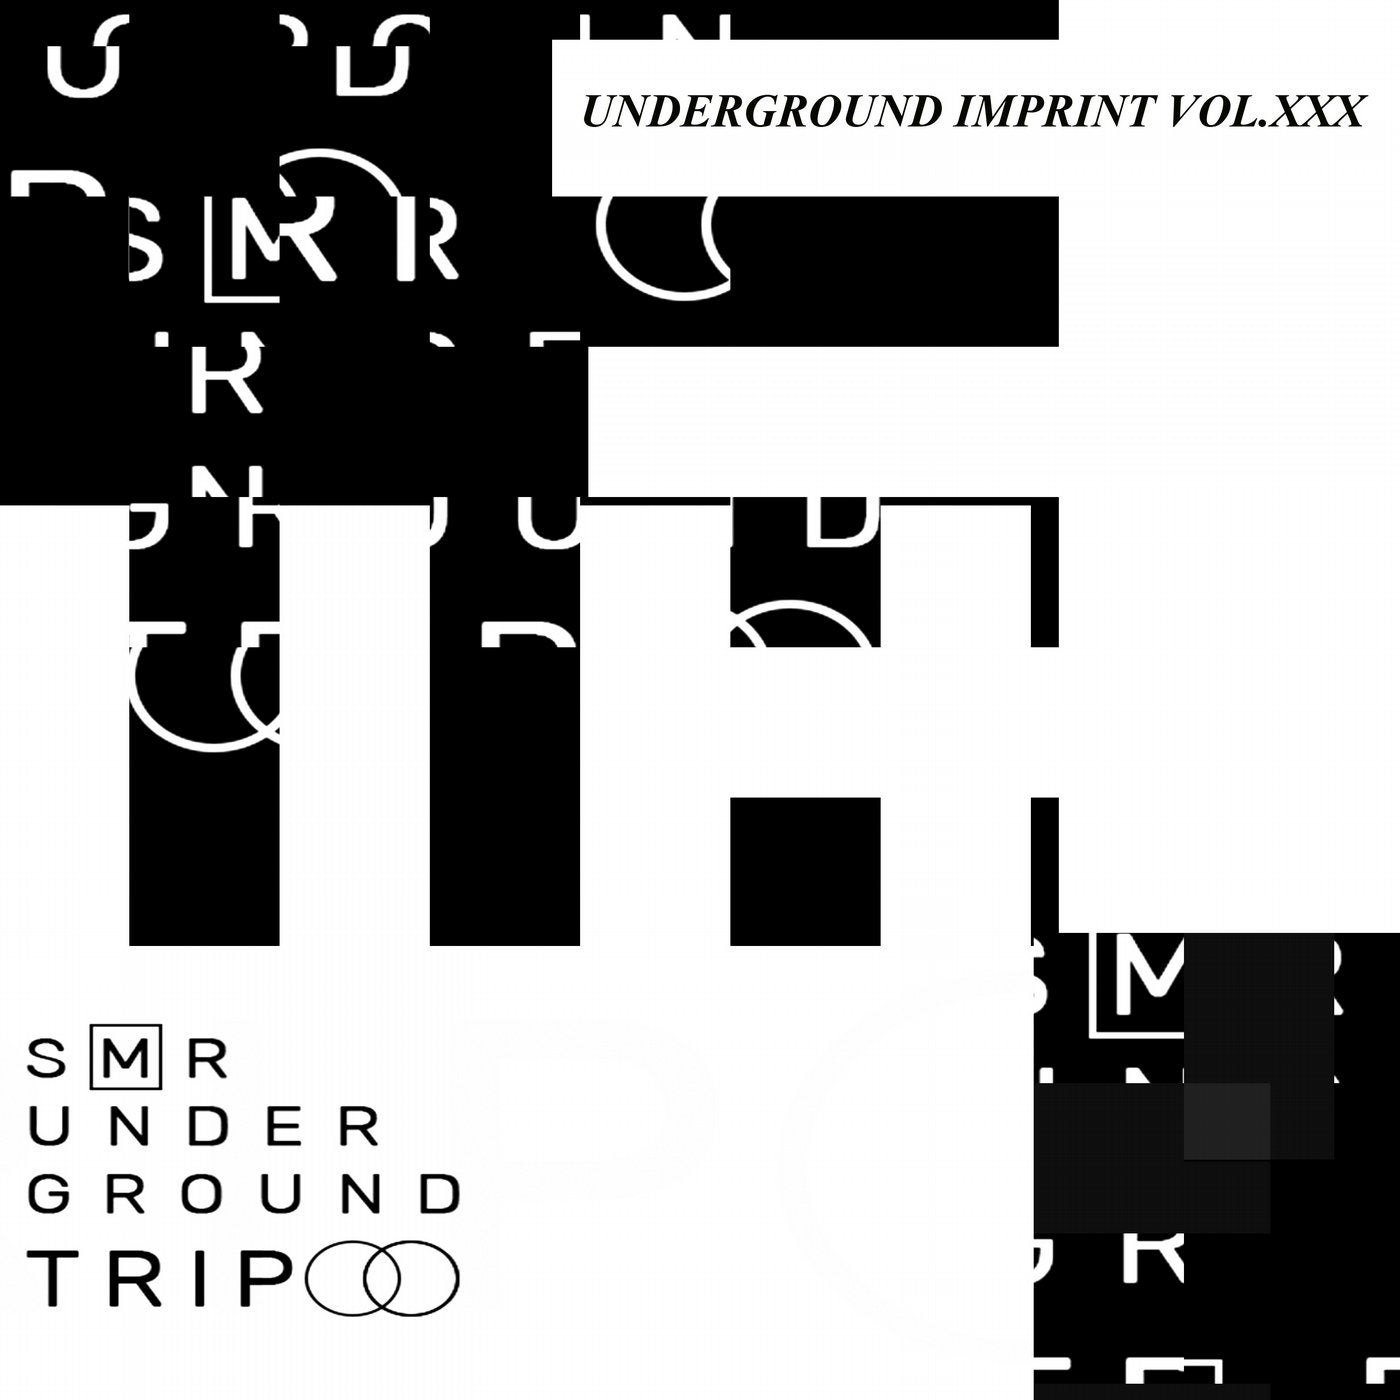 Underground Trip Vol.XXX